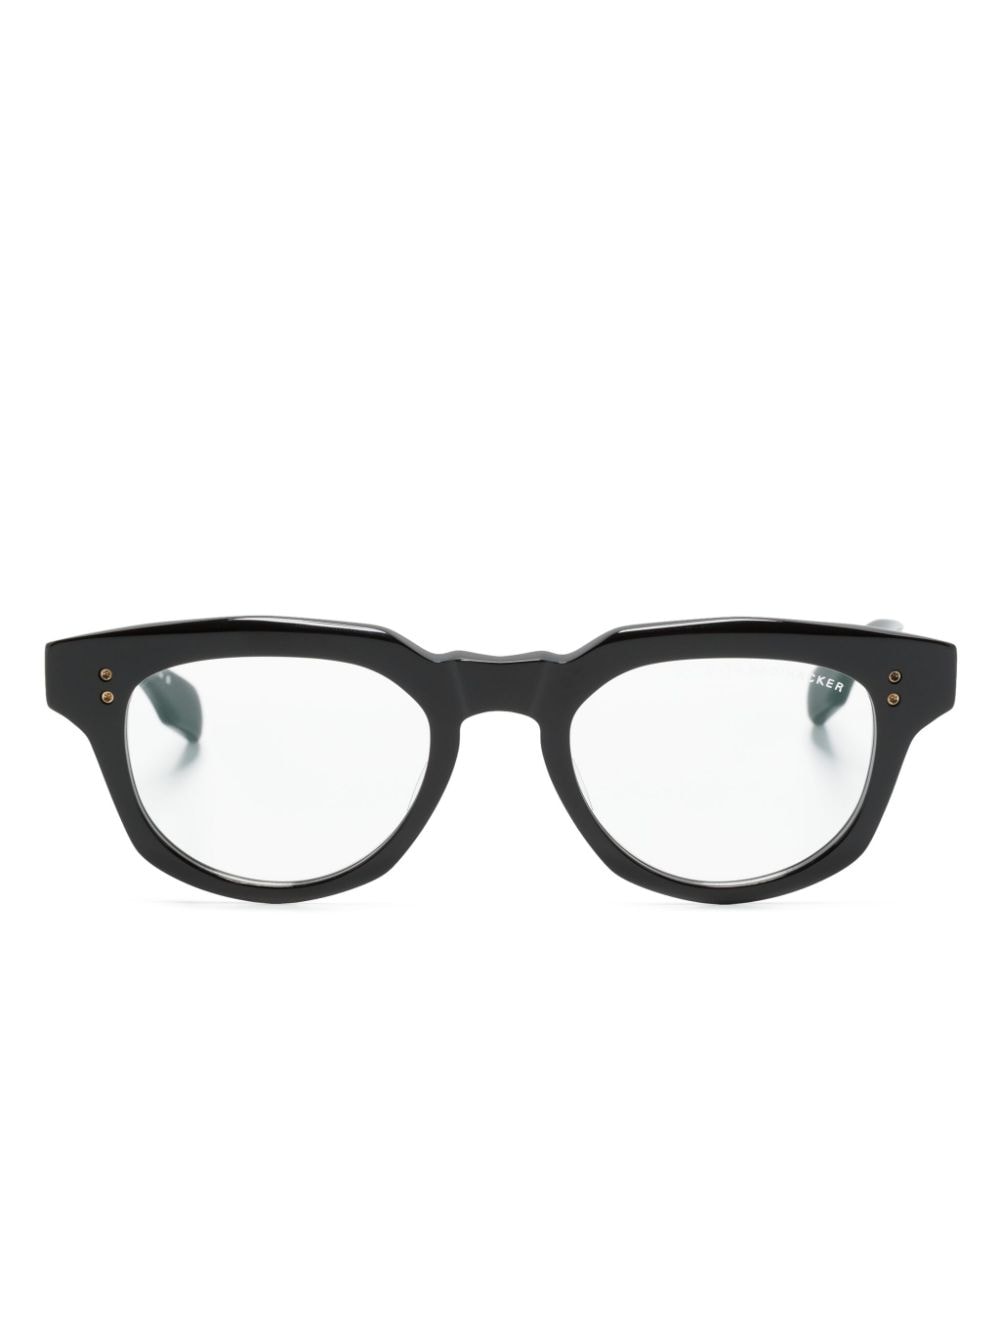 Radihacker round-frame glasses